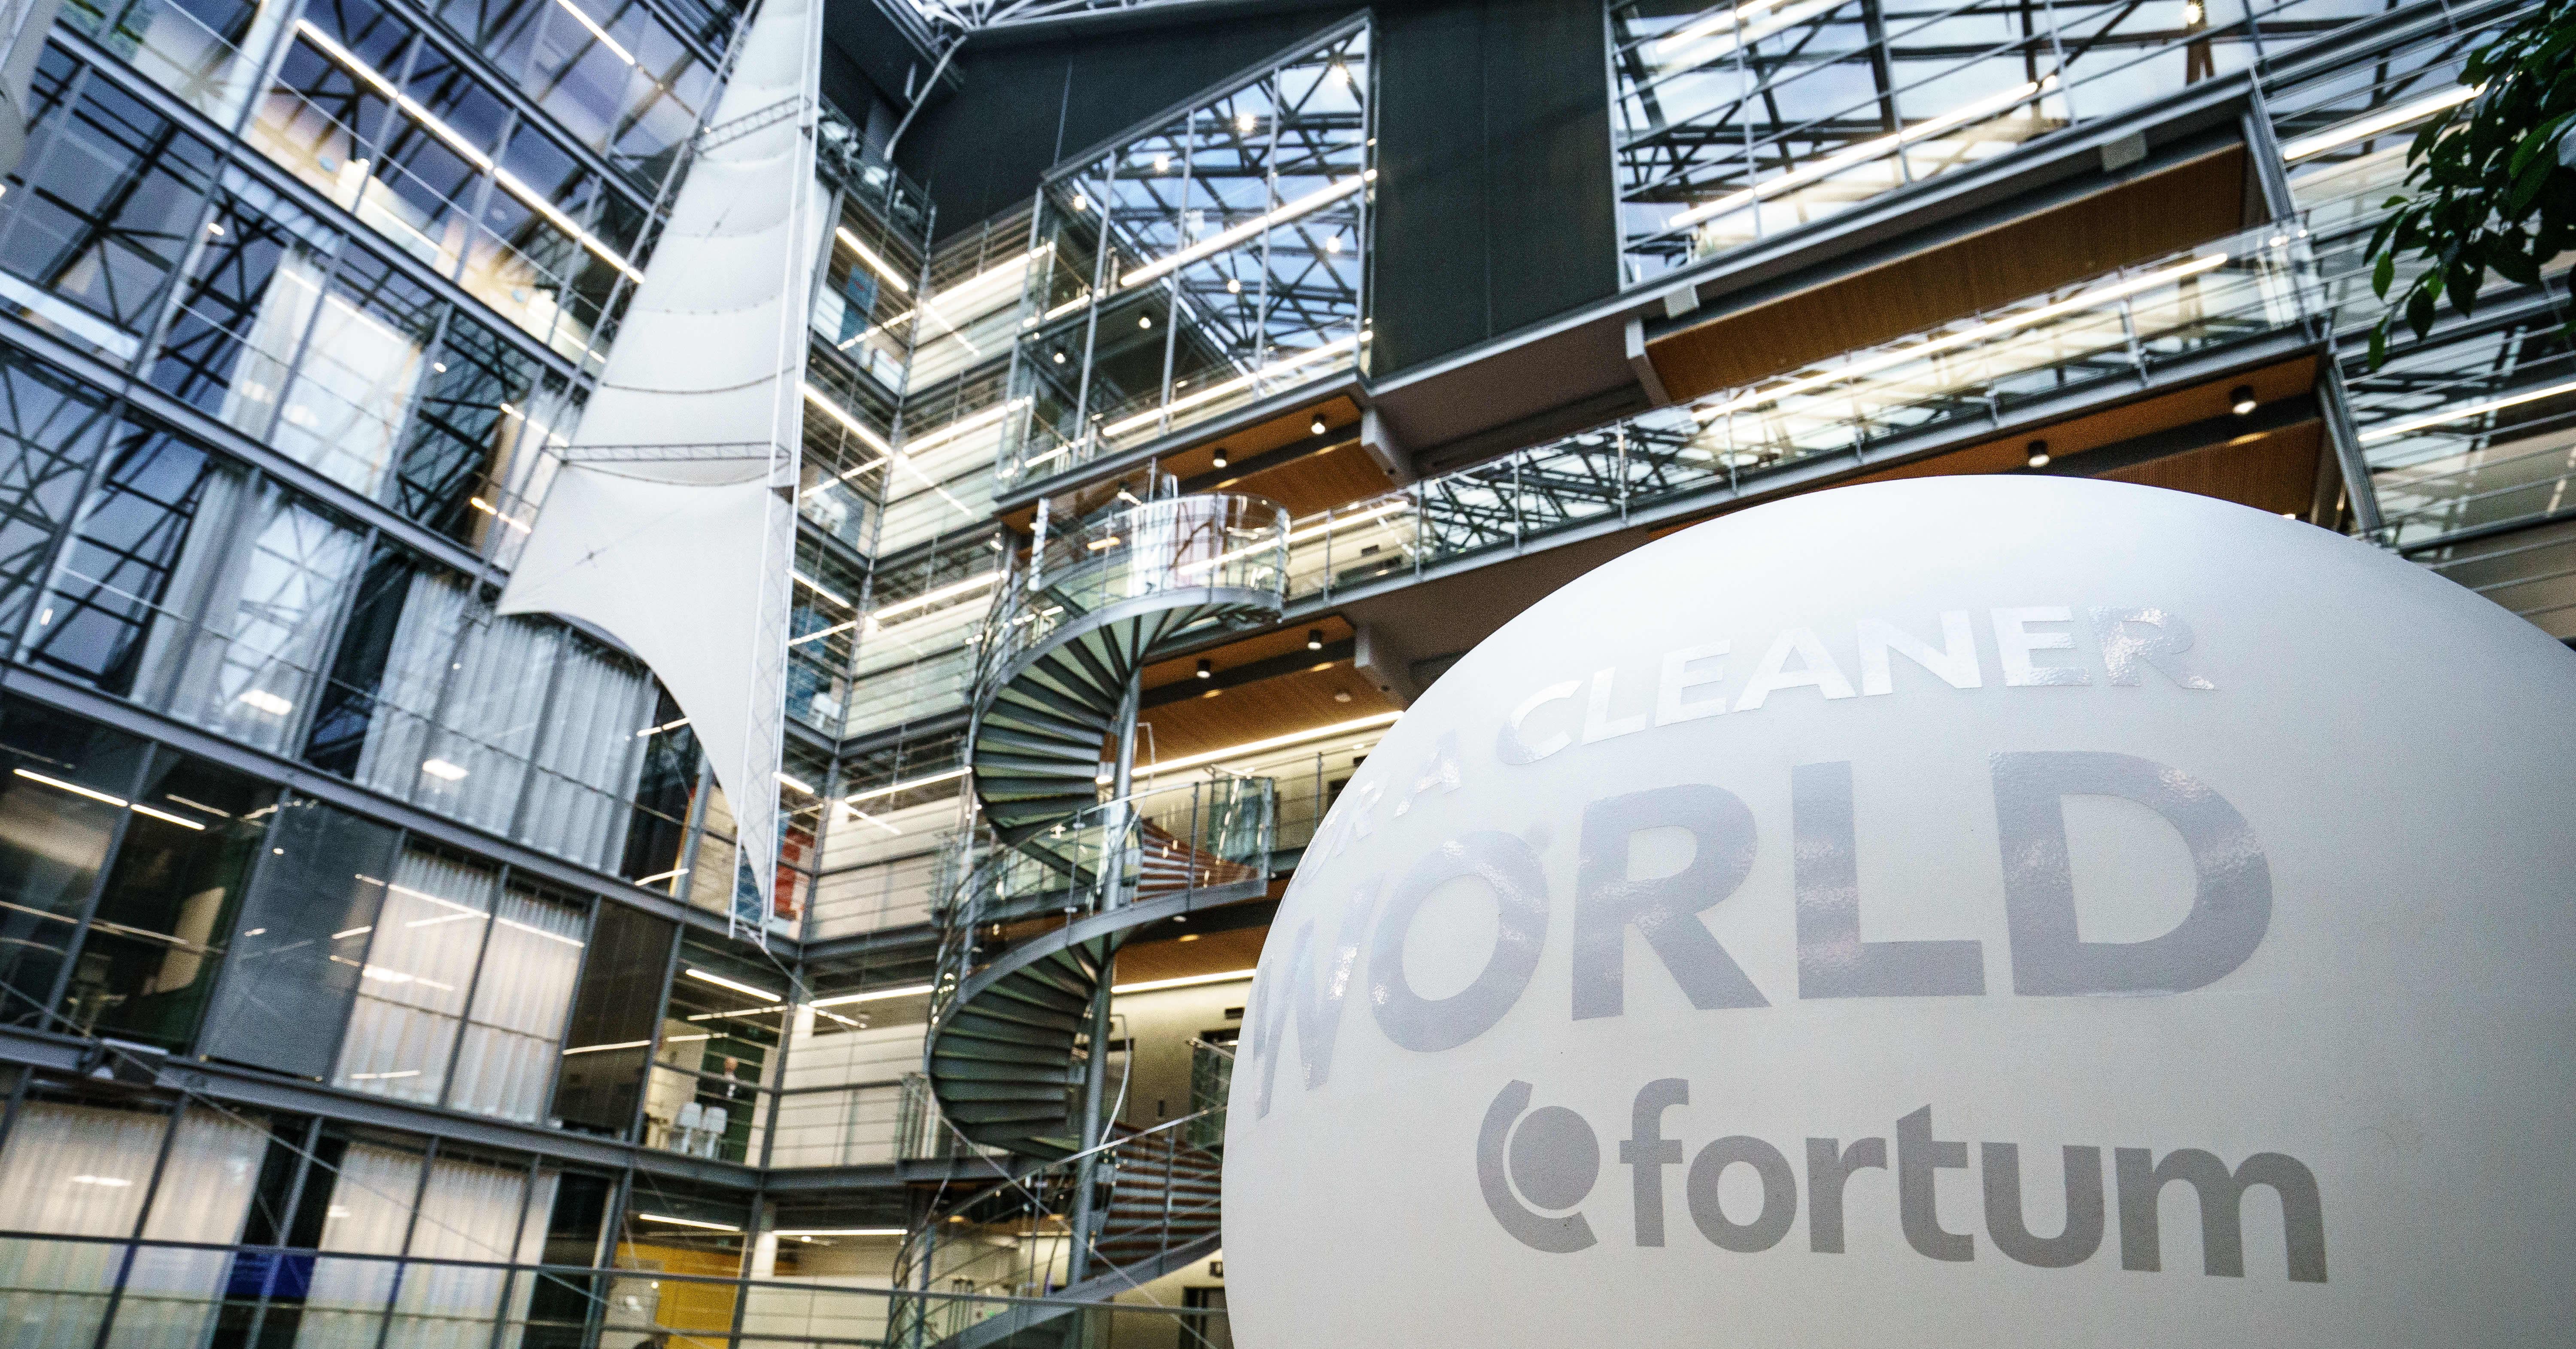 Fortum nosti tuloksensa 260 miljoonaa euroa voitolle – vuosi sitten yhtiö oli tappiolla